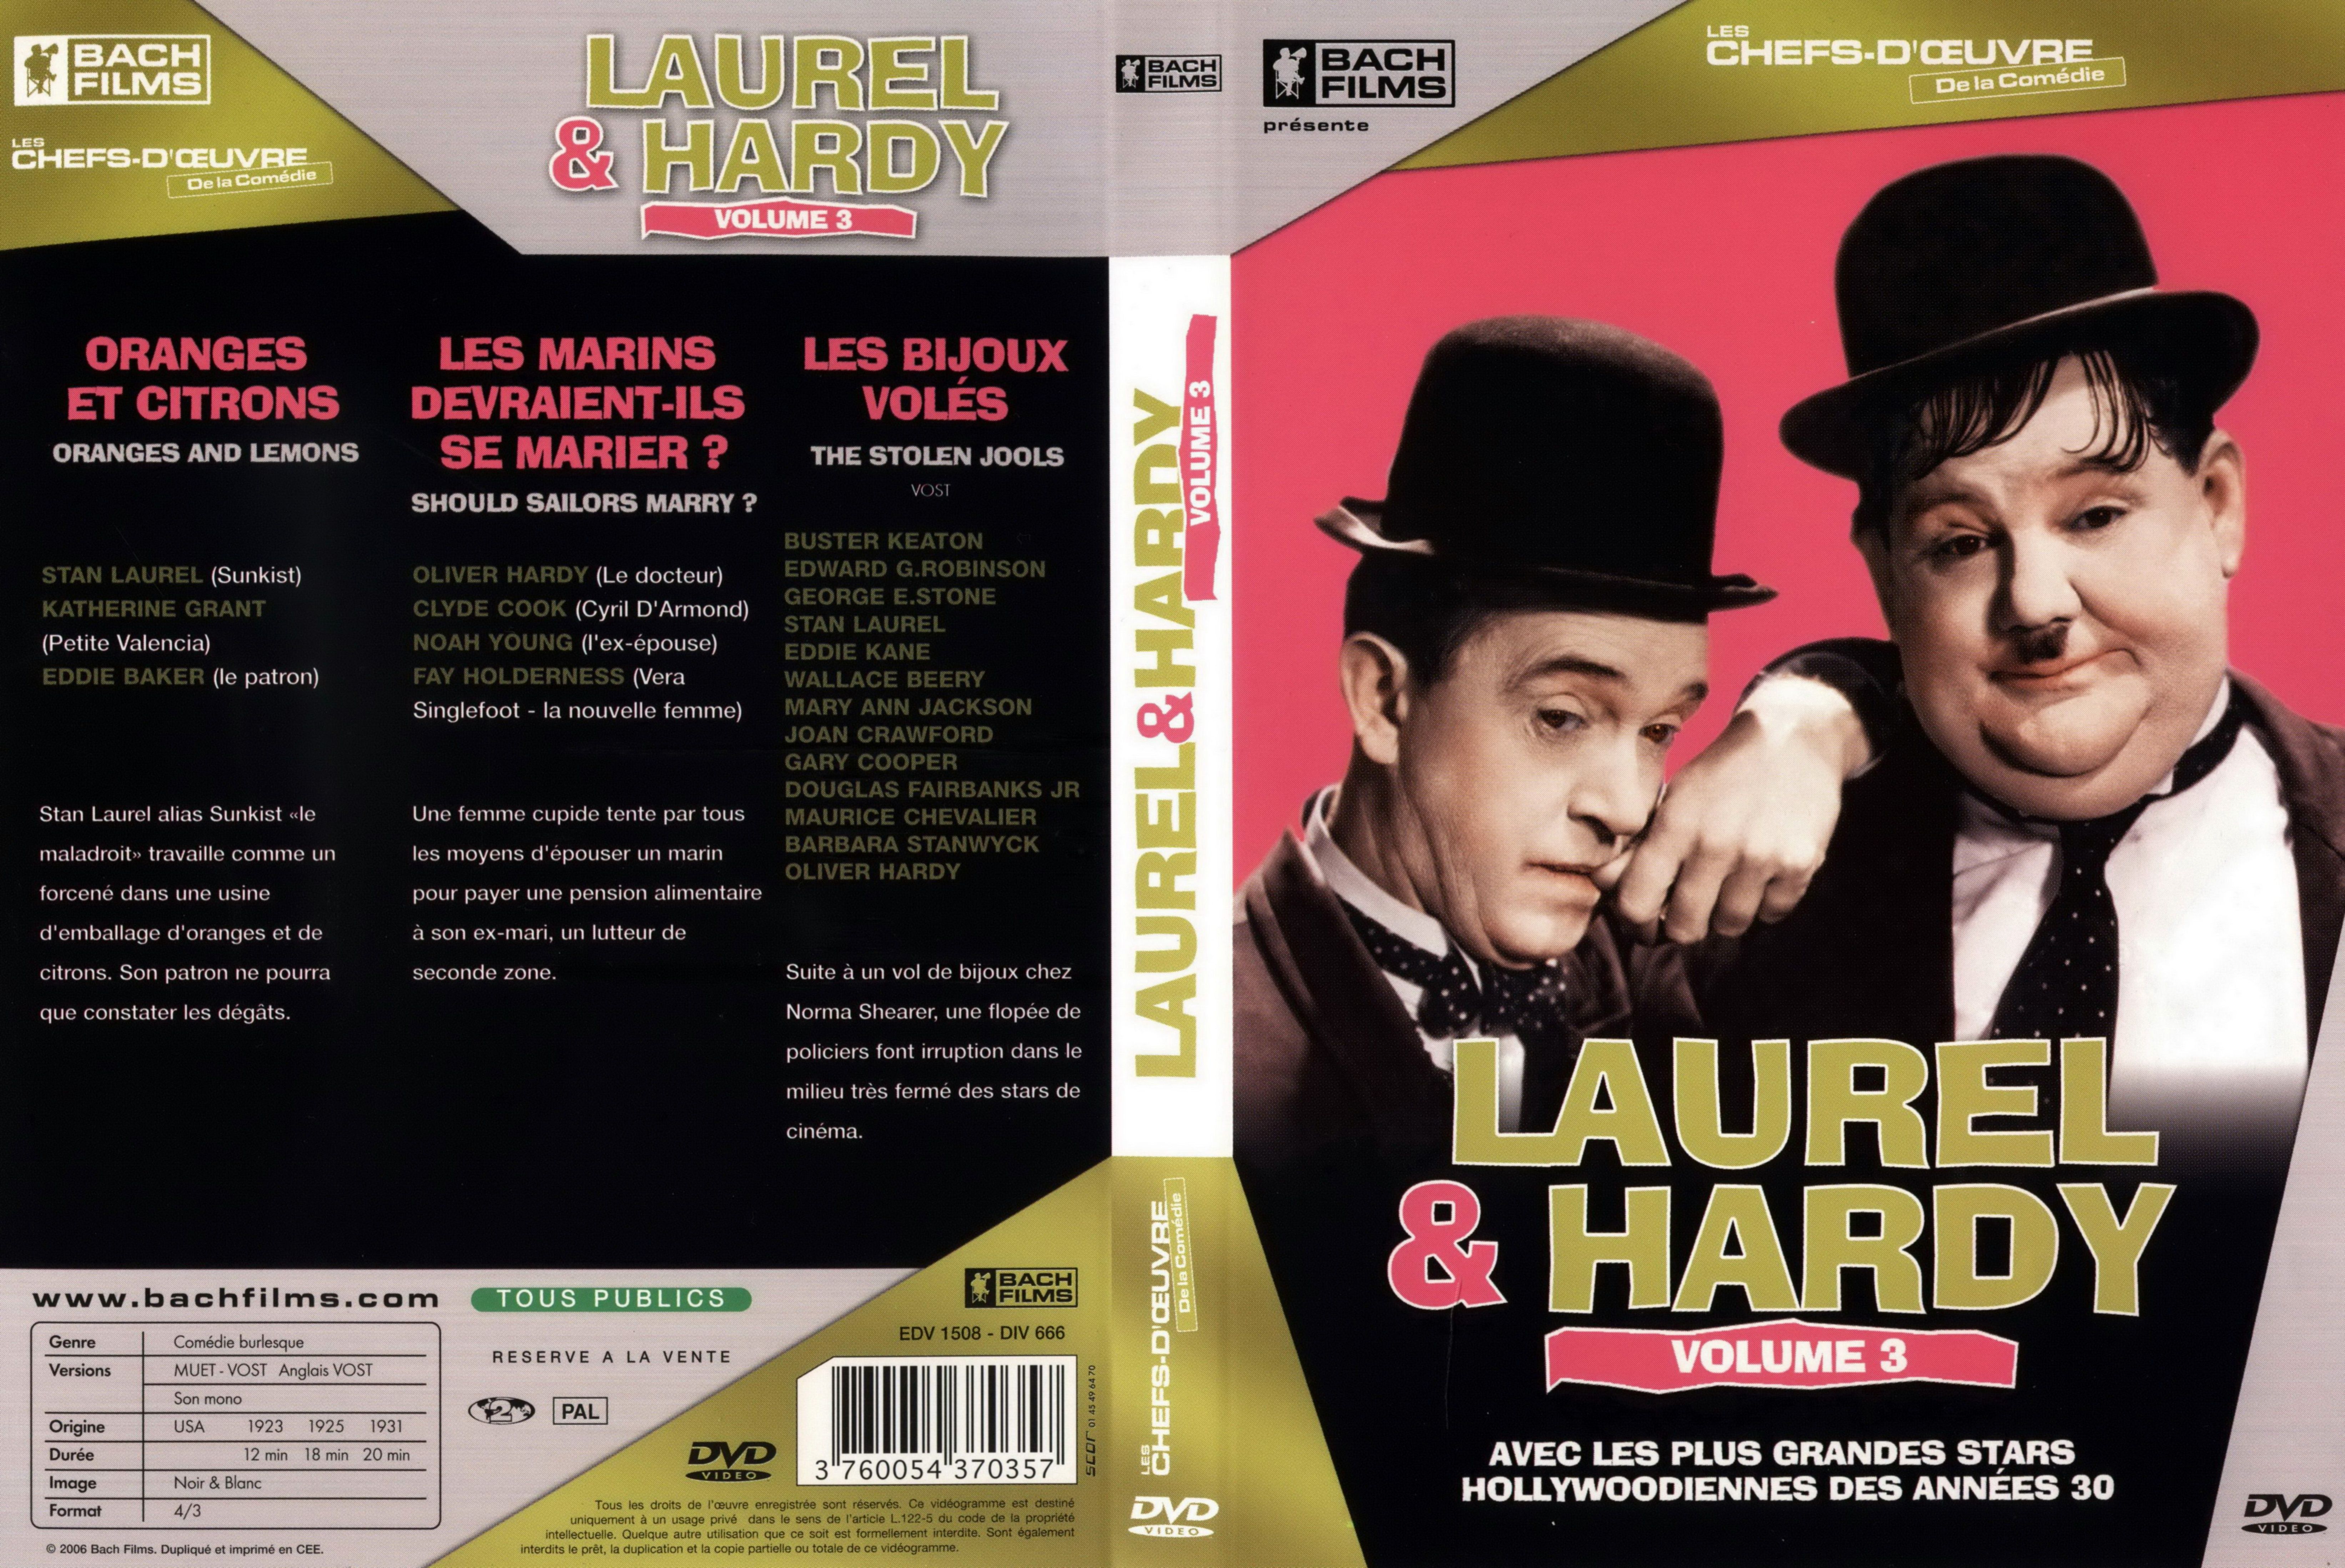 Jaquette DVD Laurel et Hardy vol 3